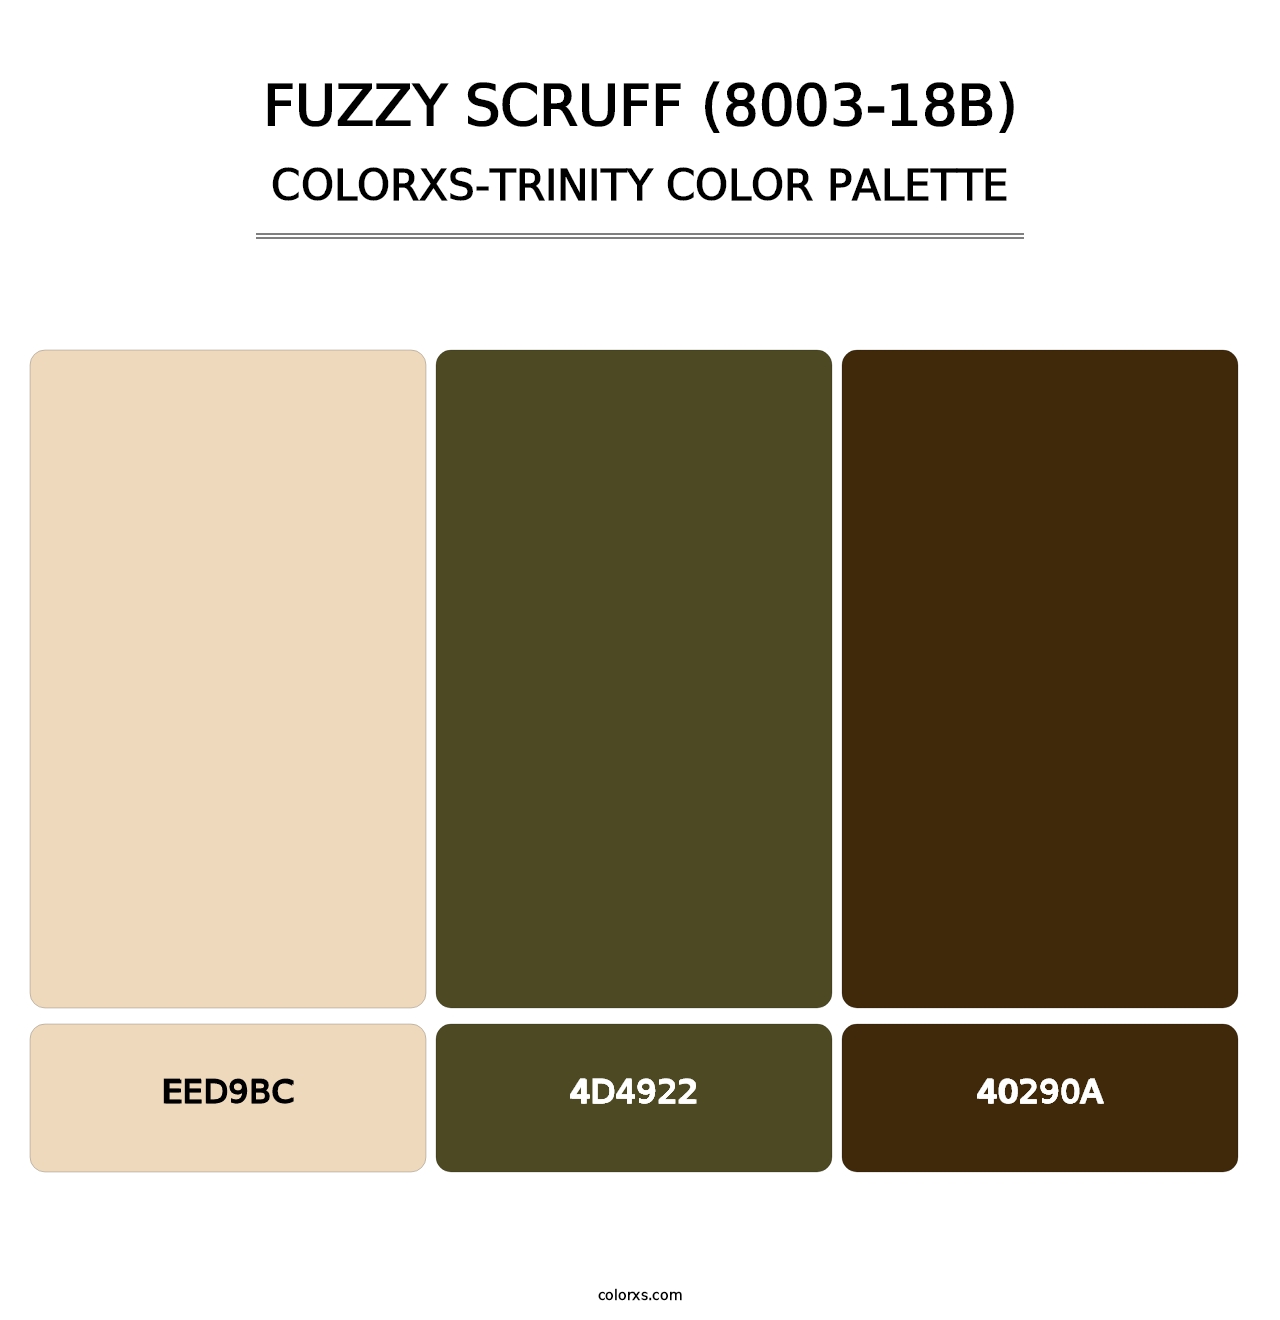 Fuzzy Scruff (8003-18B) - Colorxs Trinity Palette